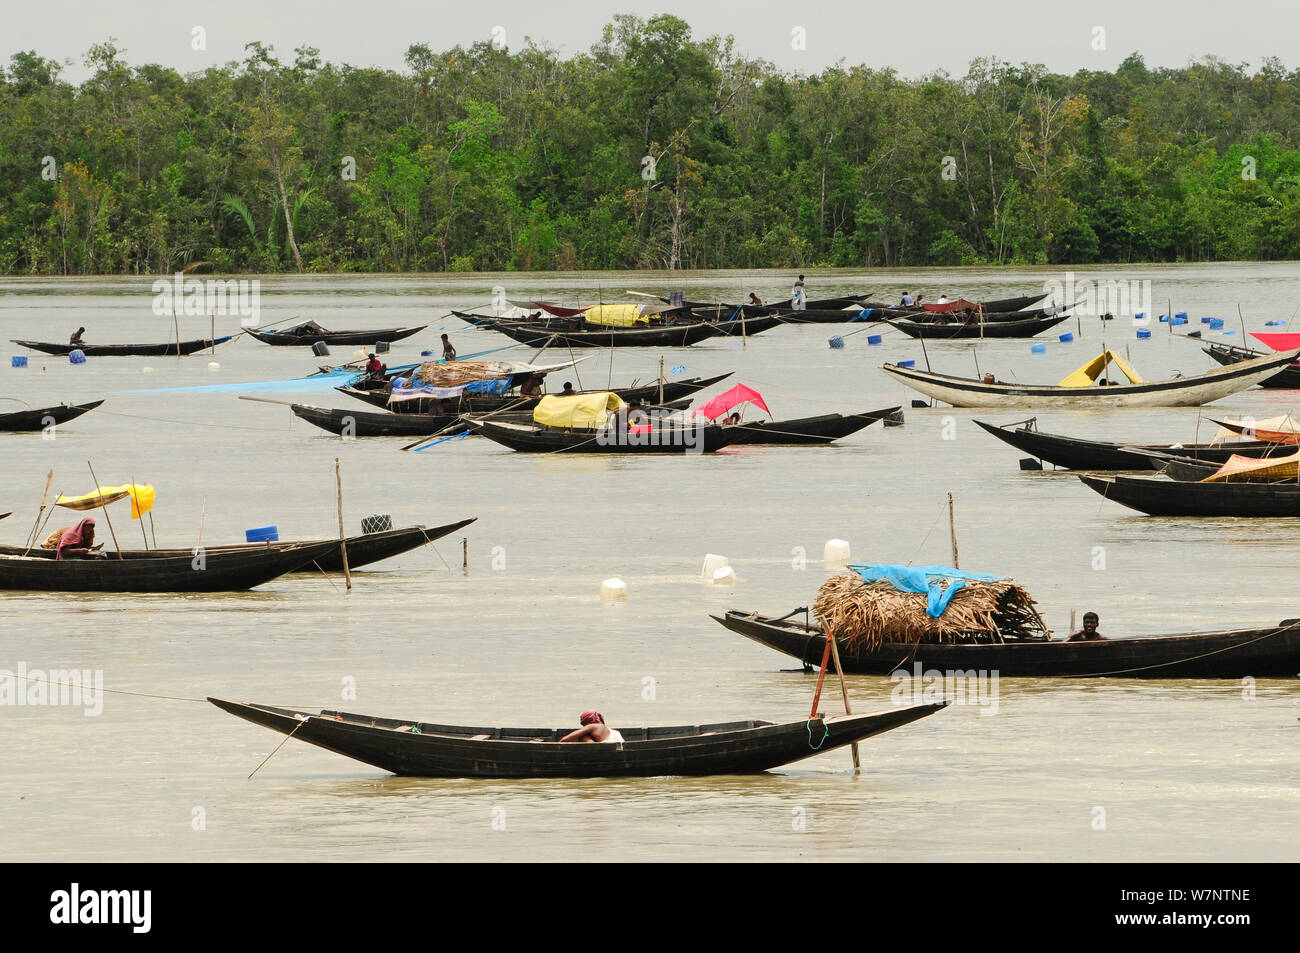 Eine große Anzahl von traditionellen offenen Boote auf einem Fluss, die Sundarbans Nationalpark, dem größten Mangrove in der Welt. Bangladesch. UNESCO-Weltkulturerbe. Juni 2012. Stockfoto